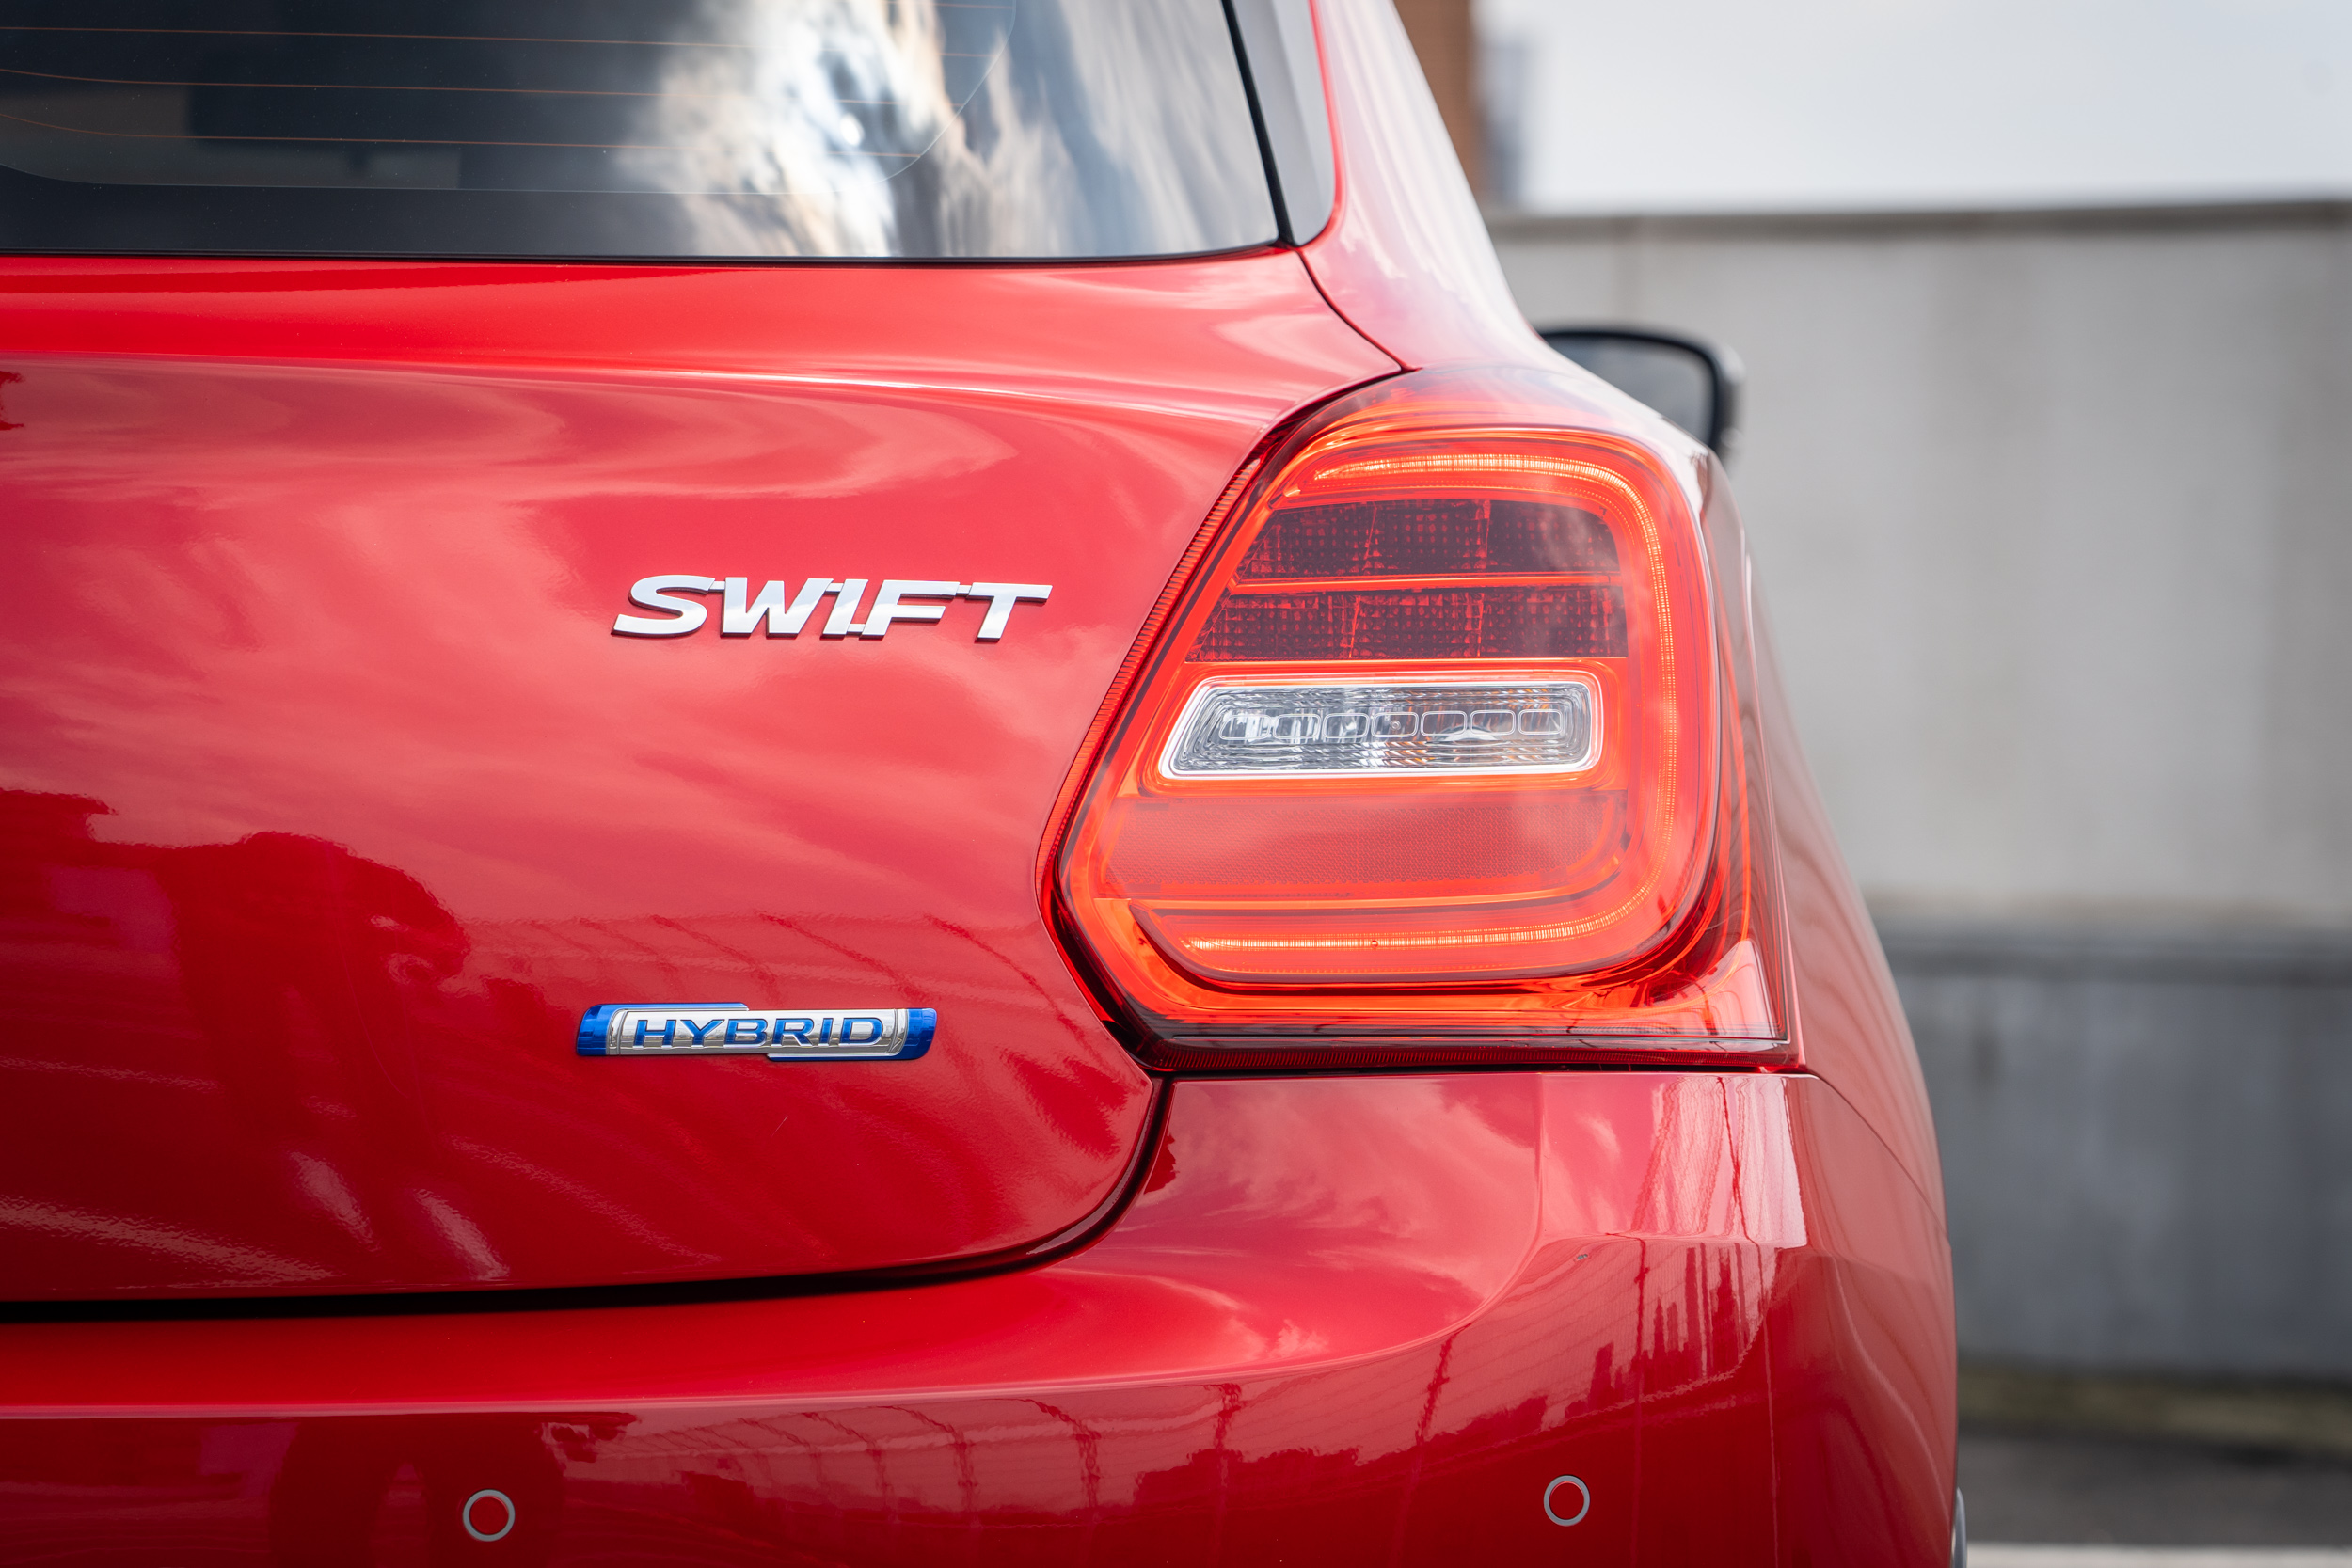 歸因於油電轉換後的 Swift 在造型差異上甚小；Hybrid 徽飾可以說是少有能夠辨別車輛差異的方法。